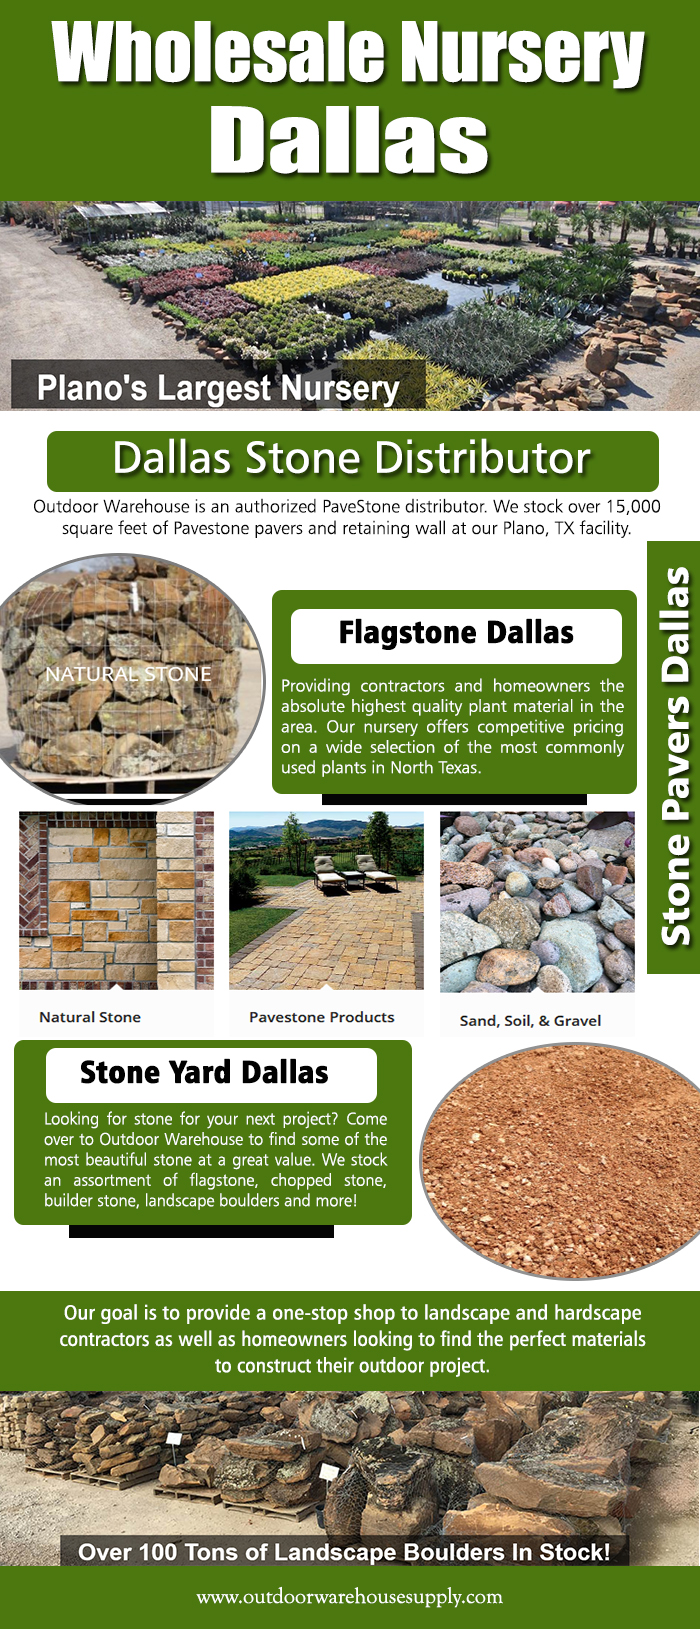 Stone Yard Dallas